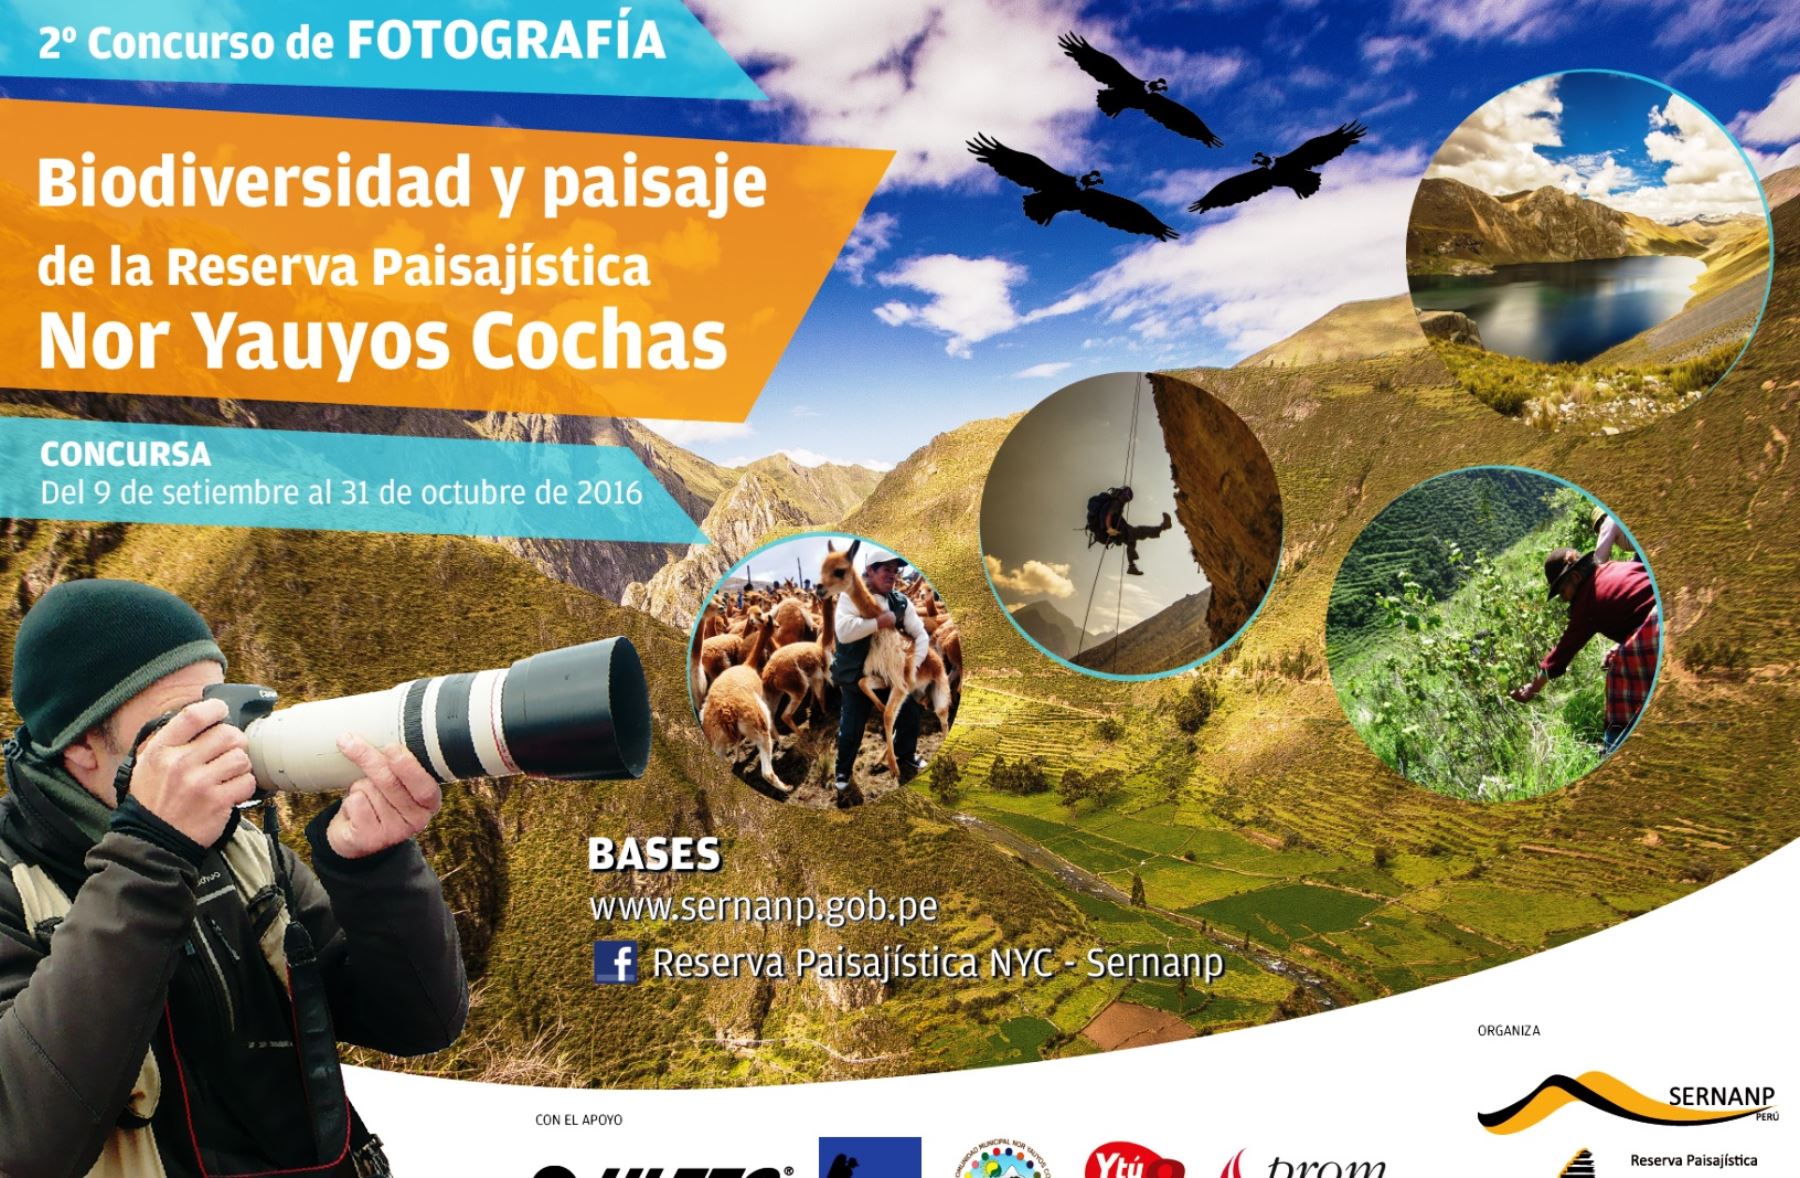 Sernanp organiza concurso fotográfico de la Reserva Paisajística Nor Yauyos Cochas.